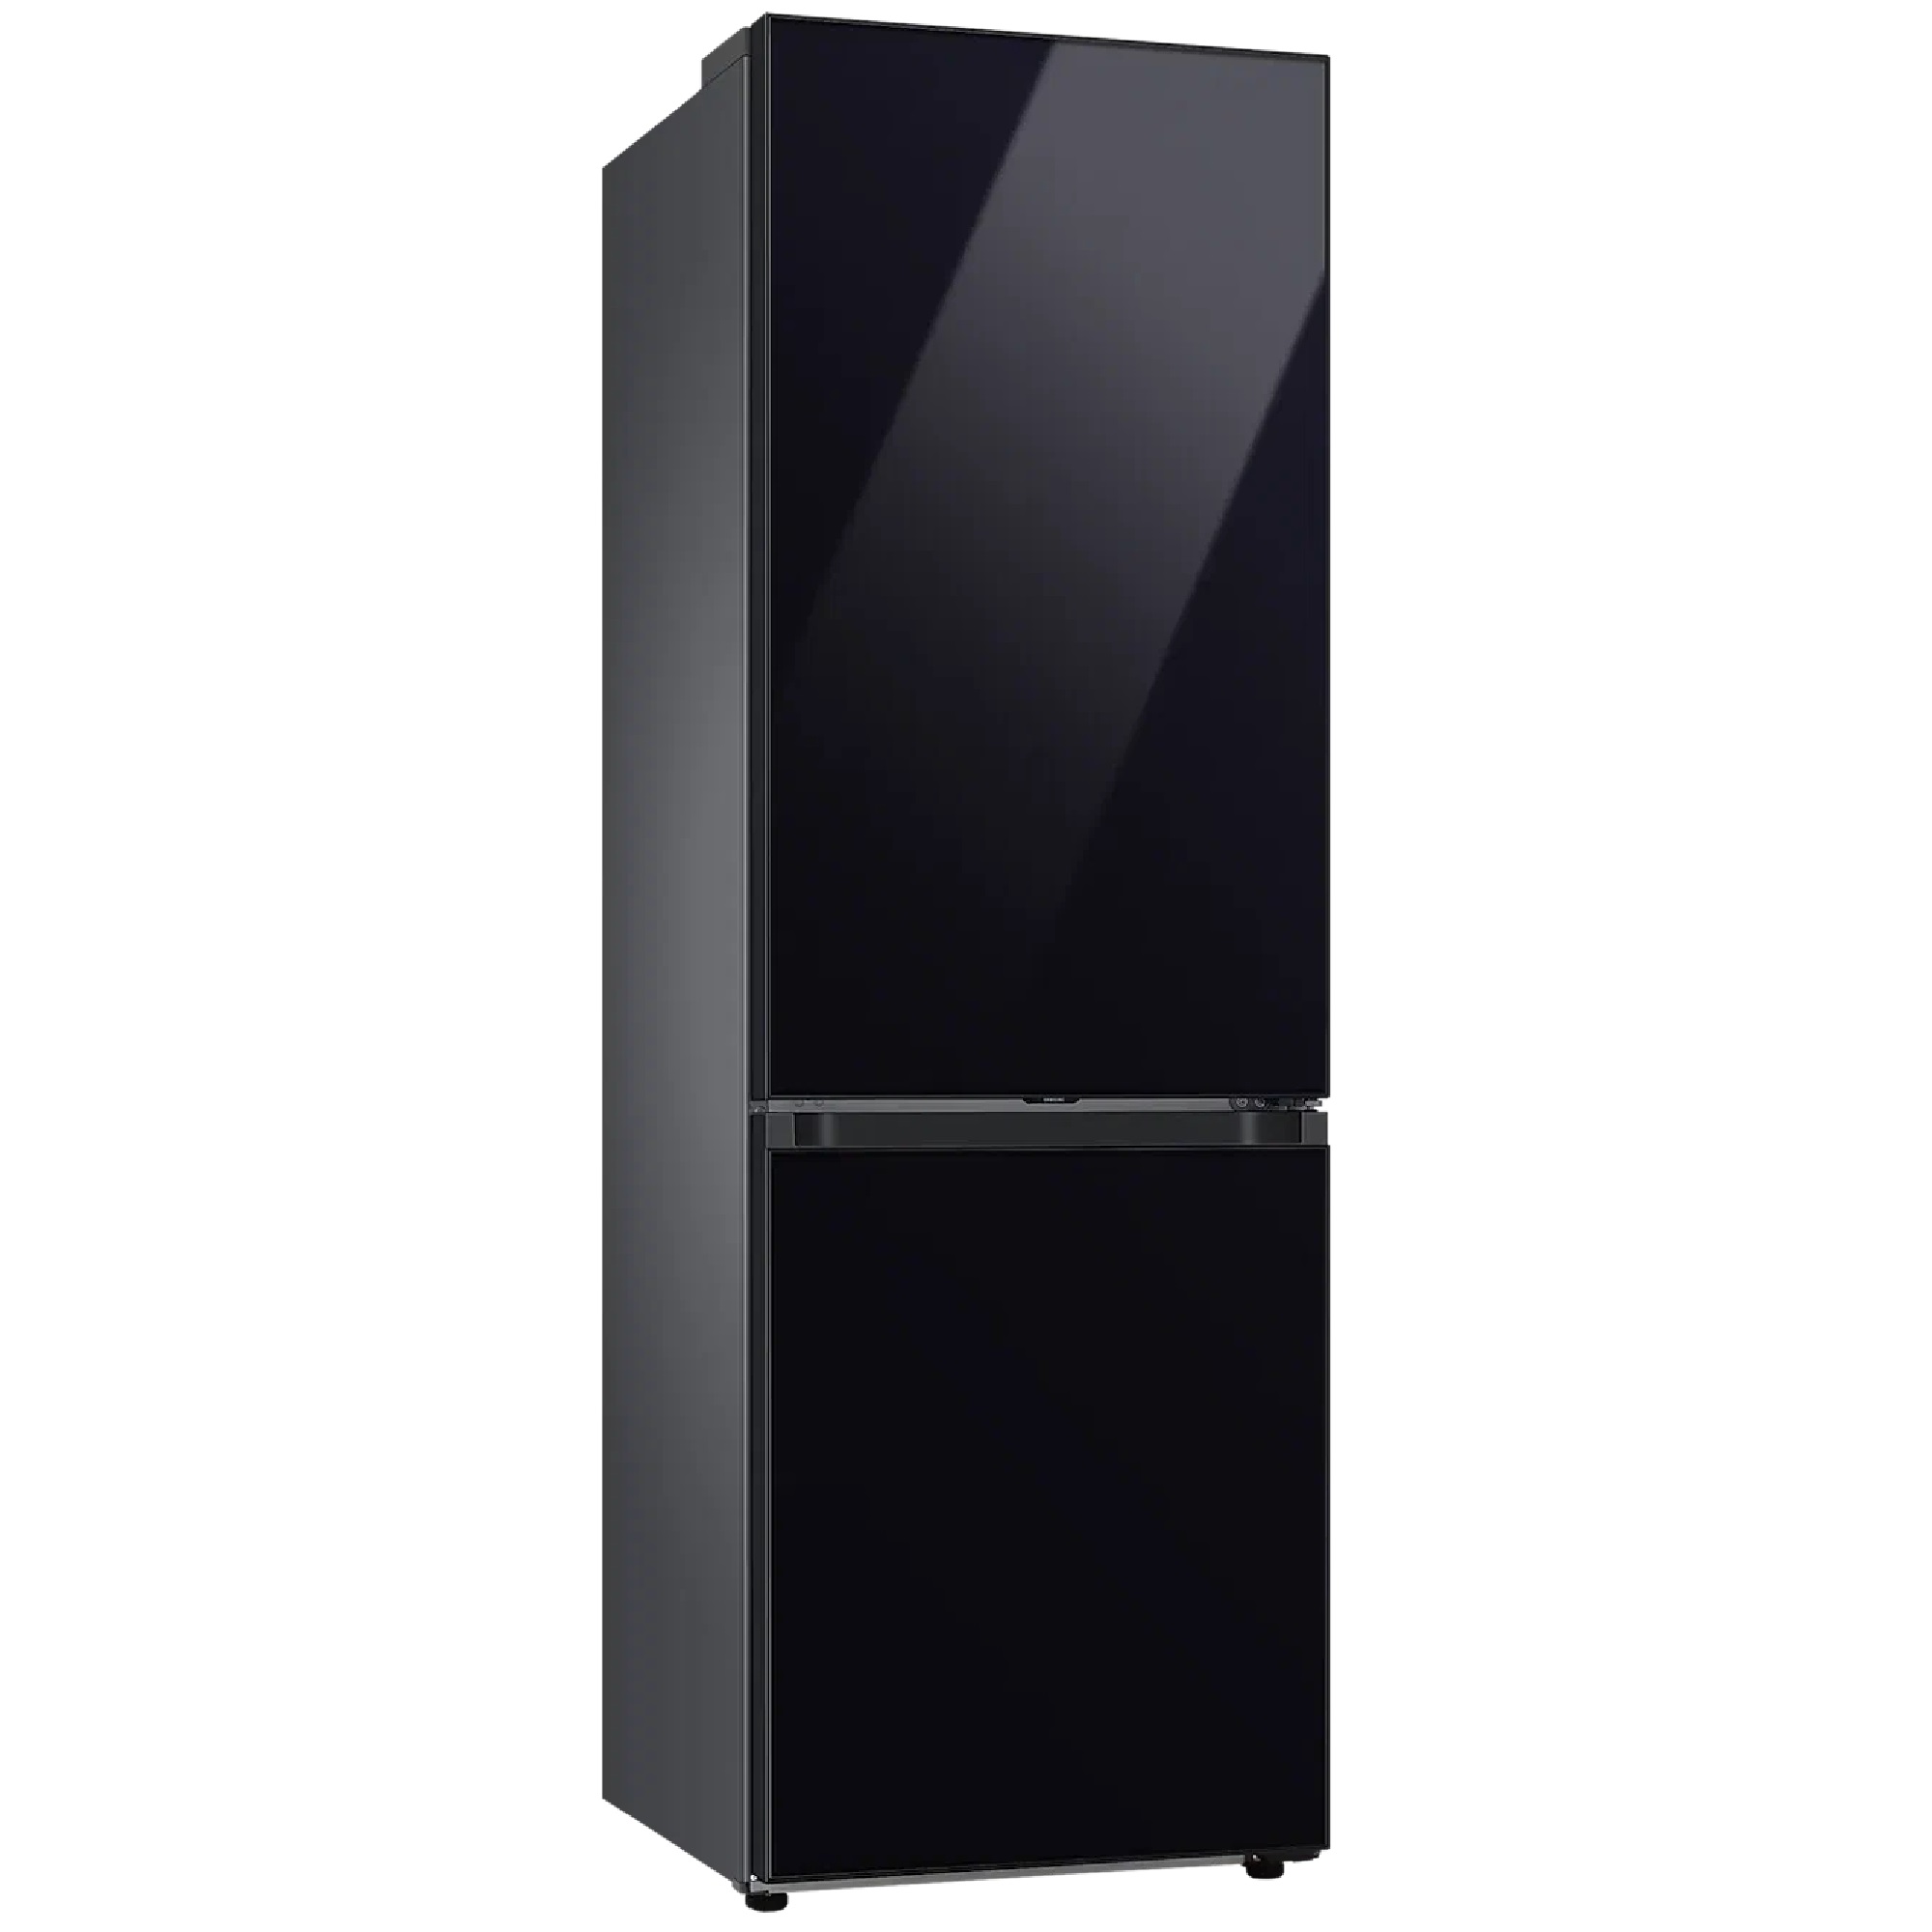 Холодильник черный с морозильником. Холодильник с морозильником Samsung bespoke rb34a7b4f22/WT черный. Samsung bespoke rb38a7b6222. Холодильник Samsung bespoke rb34a7b4fap. Samsung rb38a7b6235 холодильник bespok.